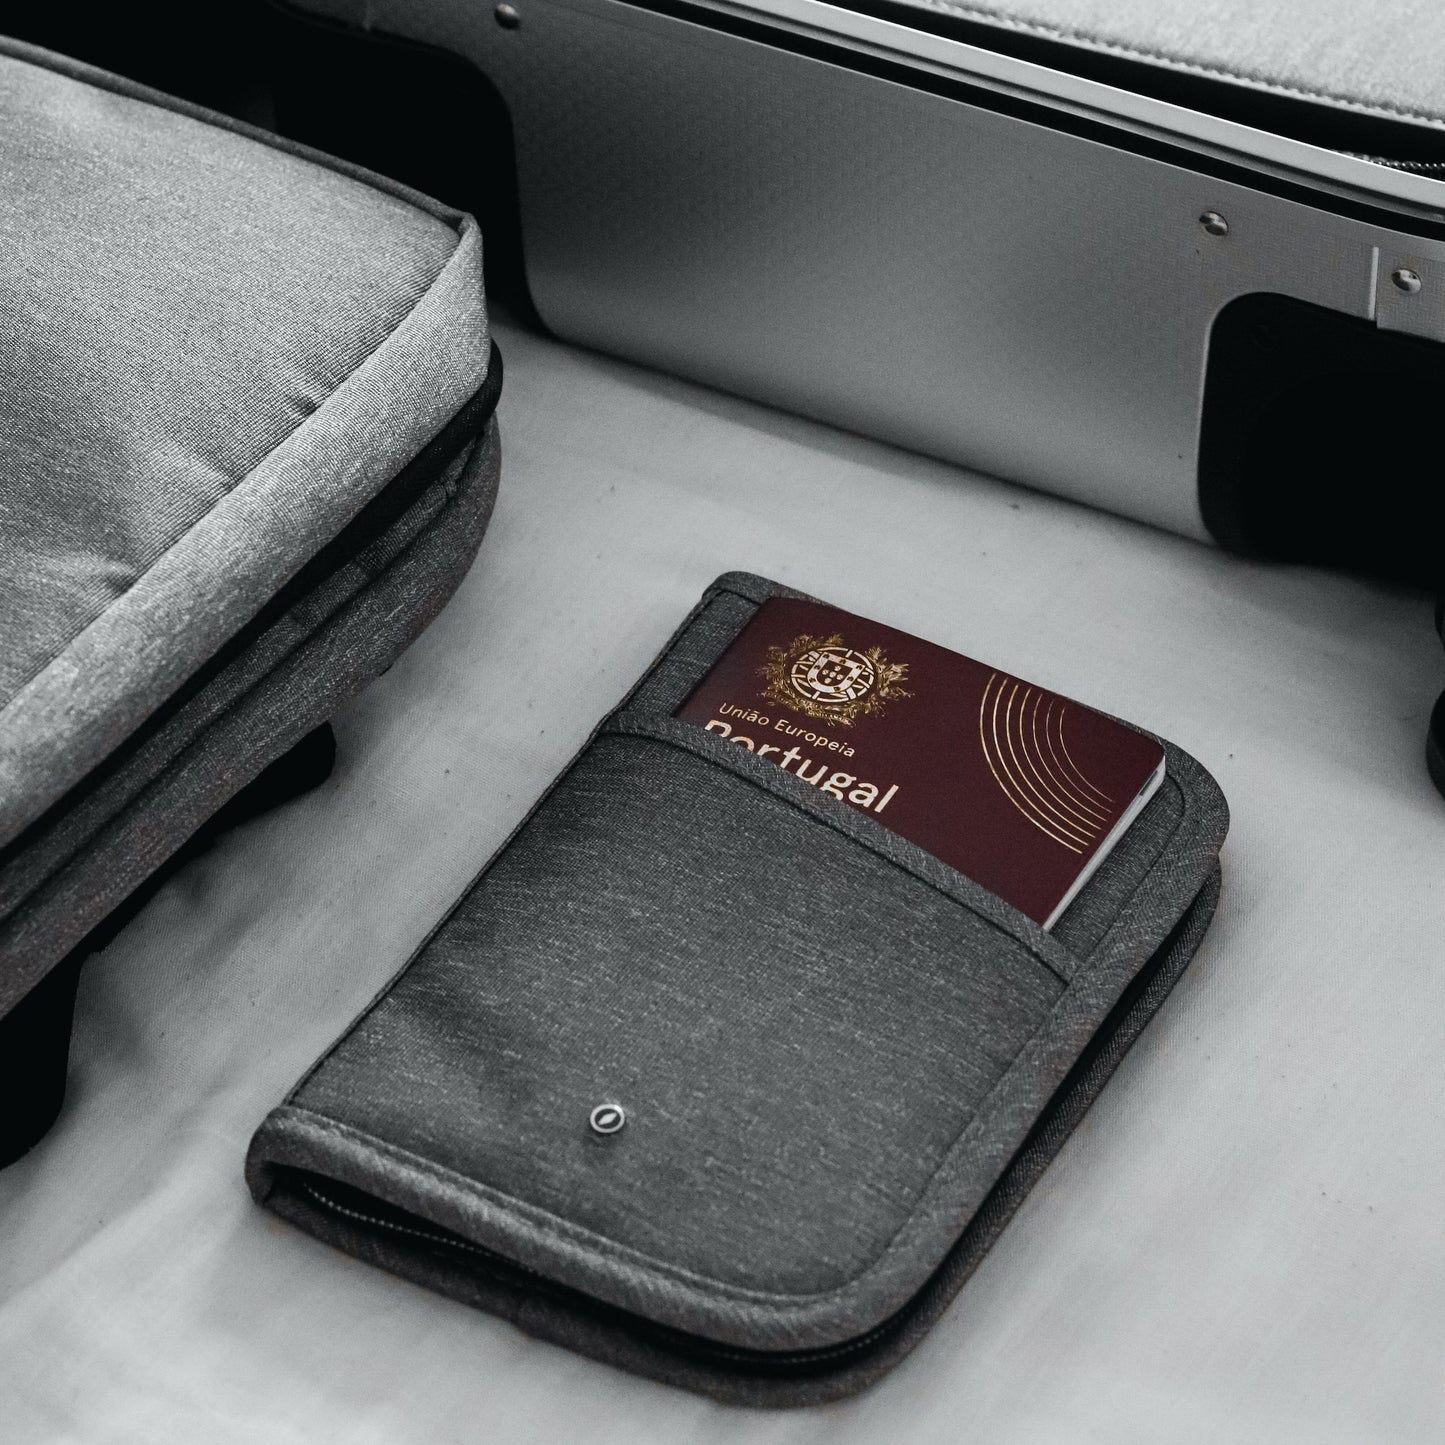 GILBANO travel passport cover 